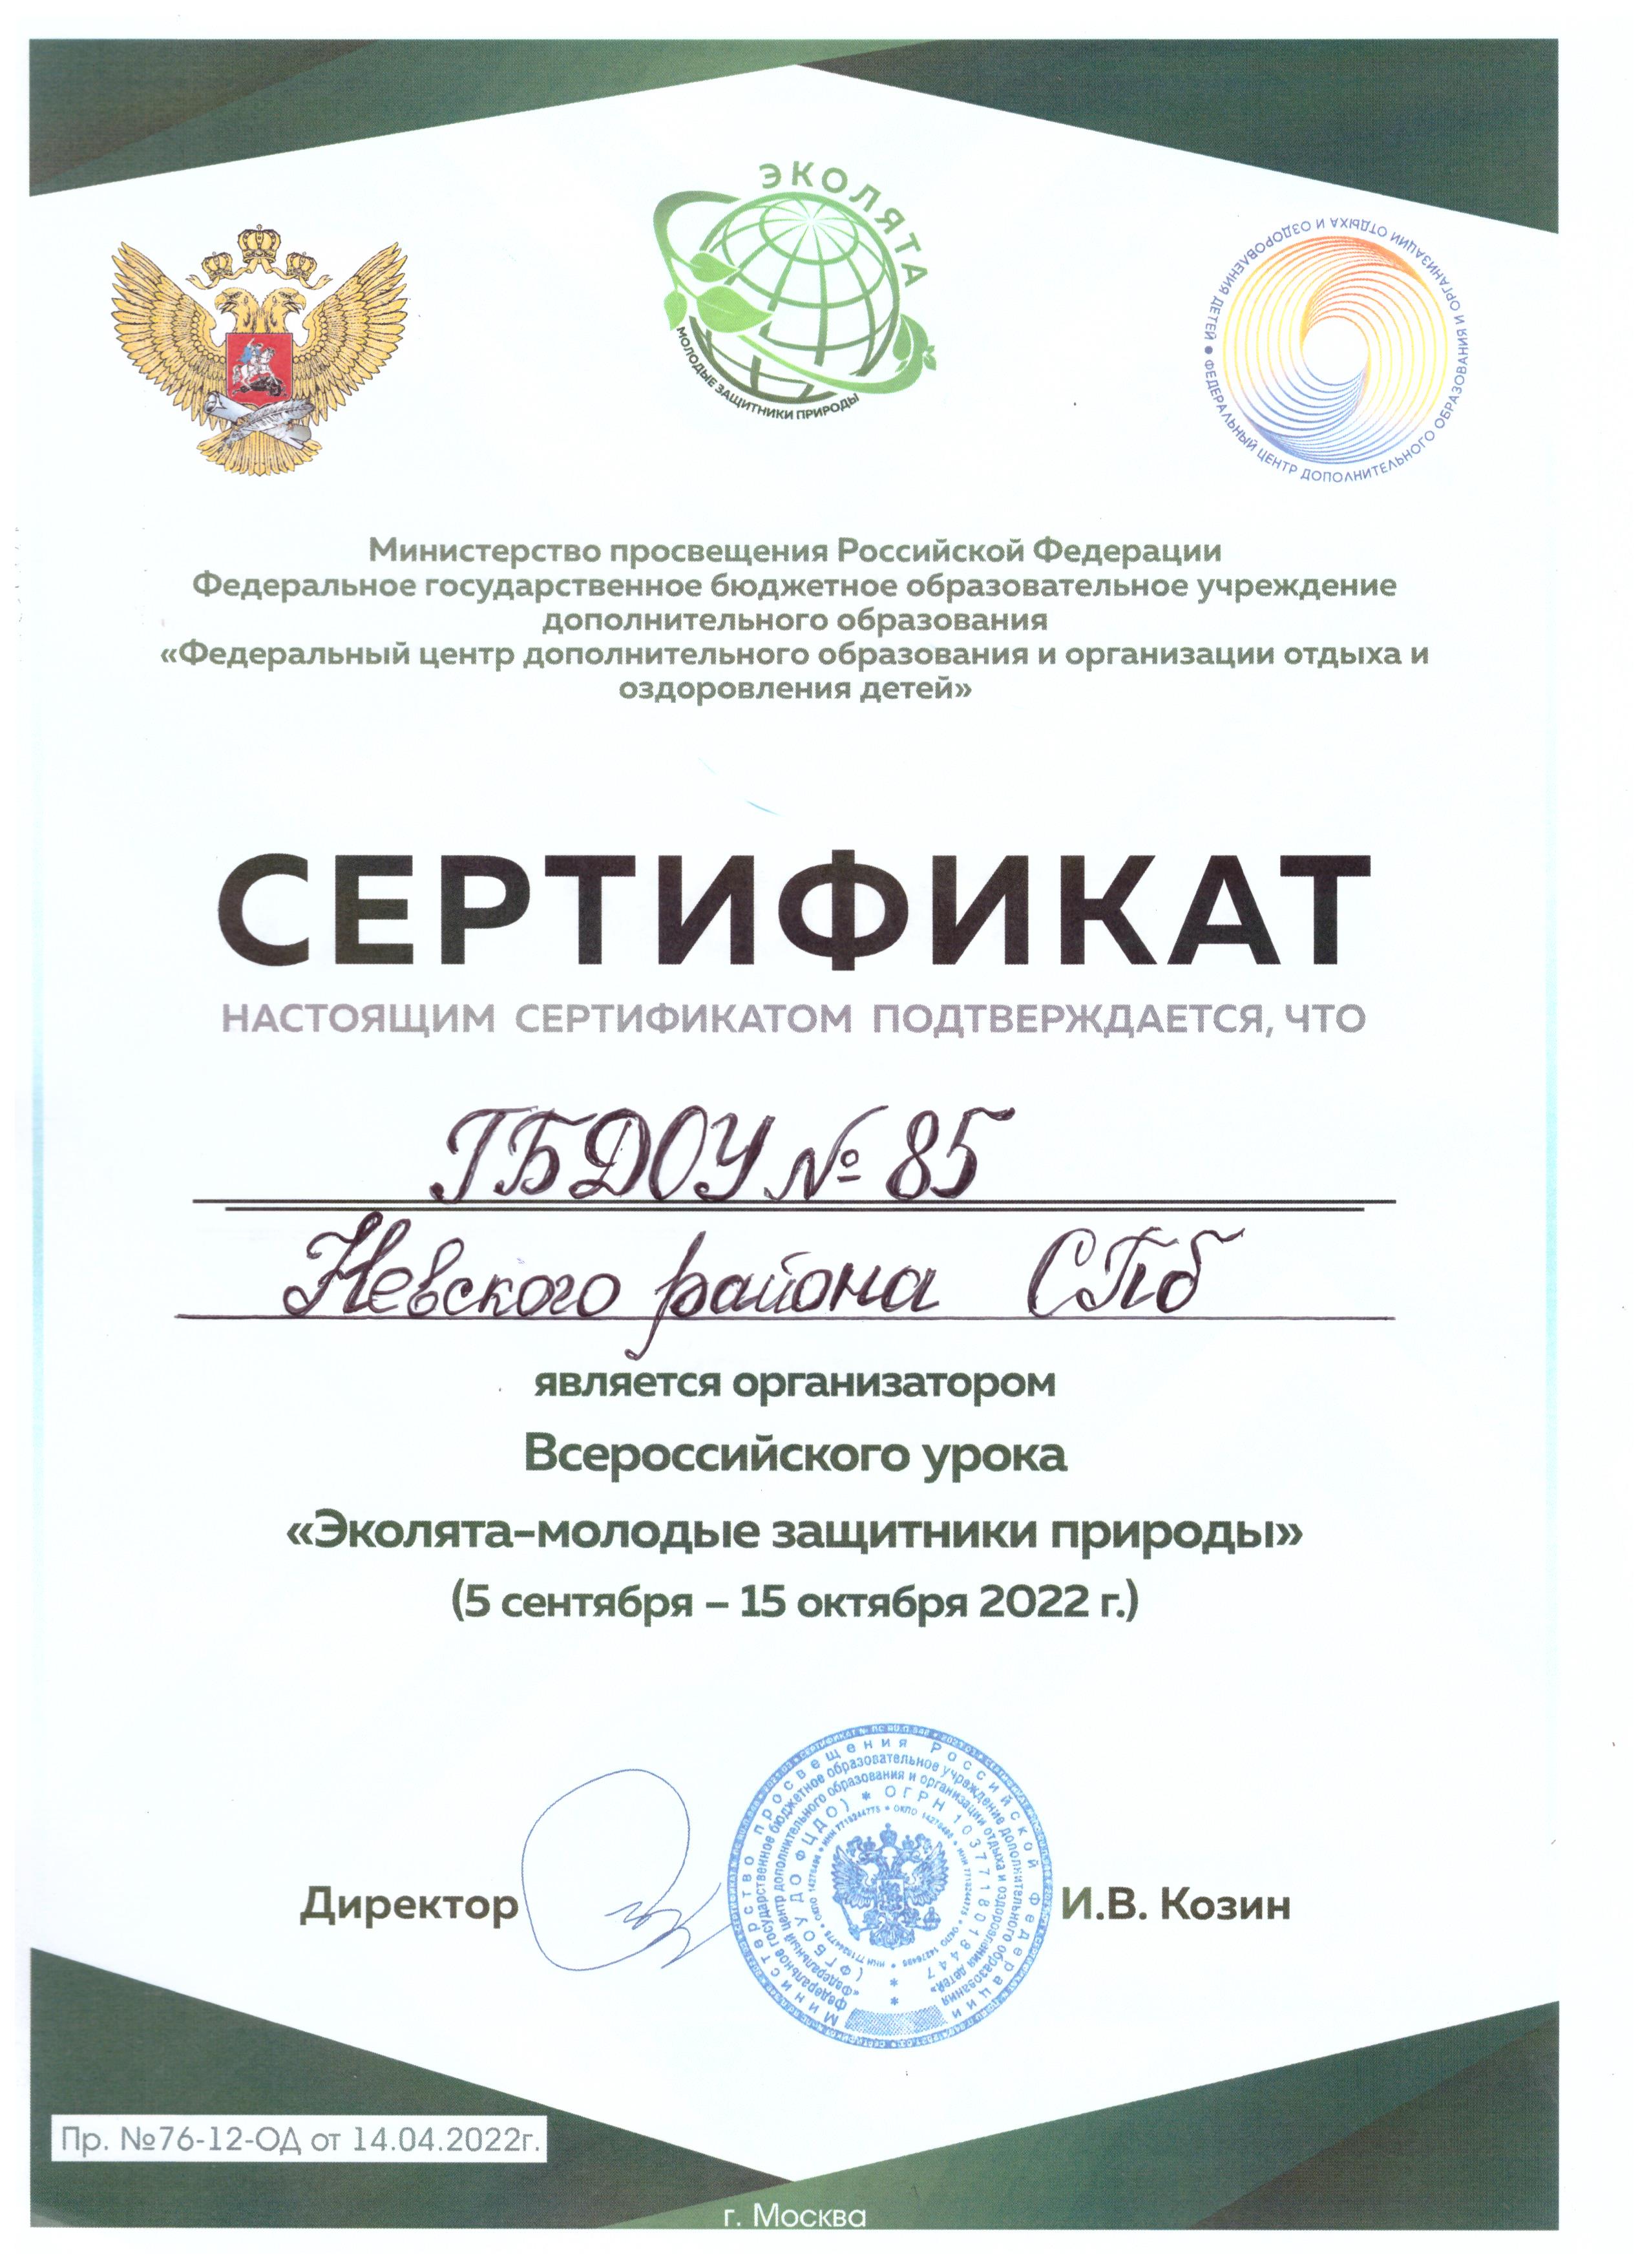 сертификат организатора